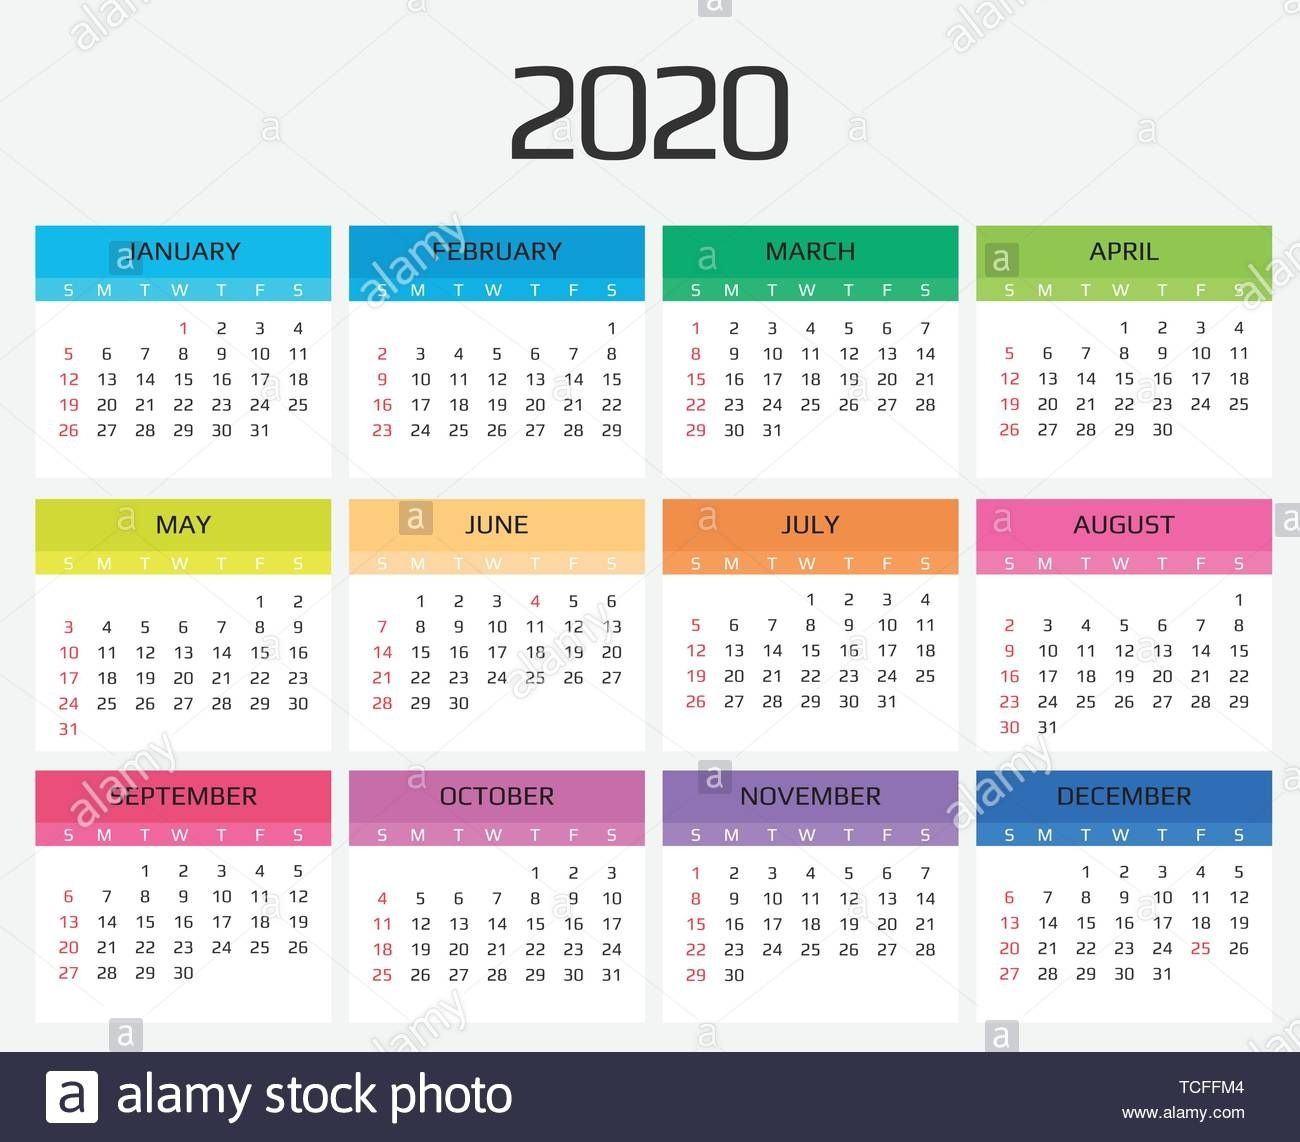 2021 Hong Kong Calendar Excel Template - Yearmon